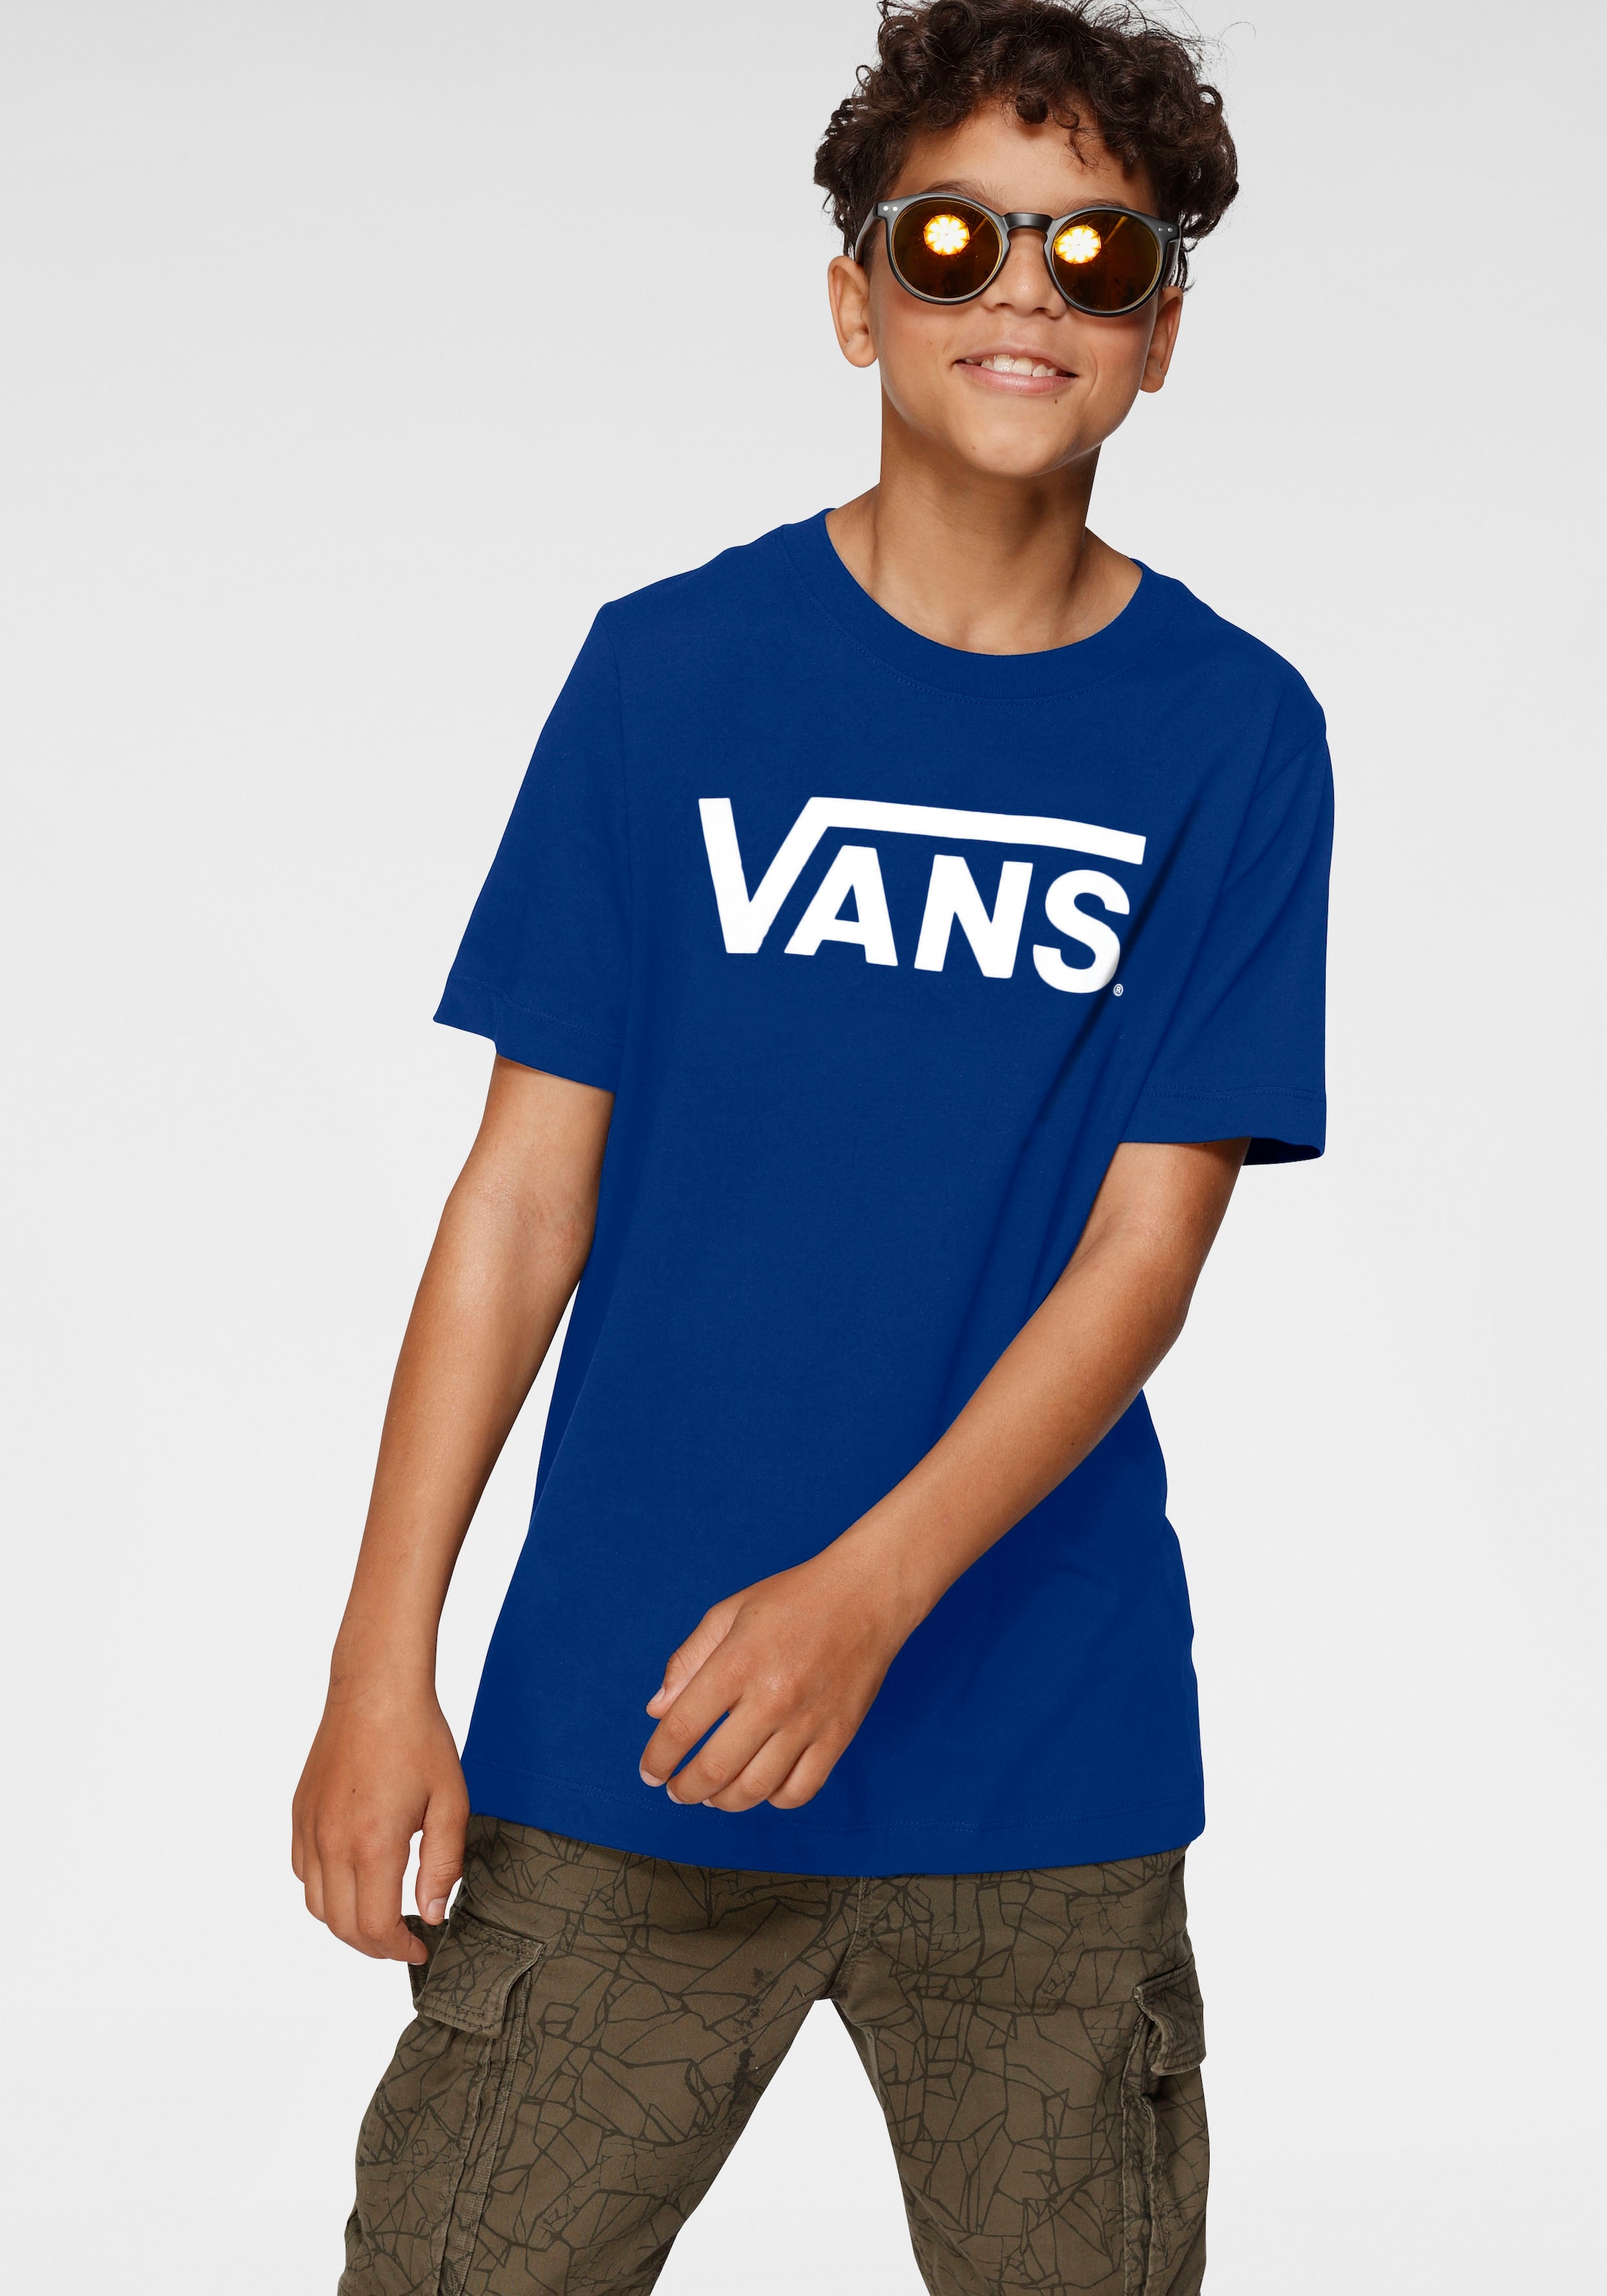 kaufen »für T-Shirt Kinder« Vans